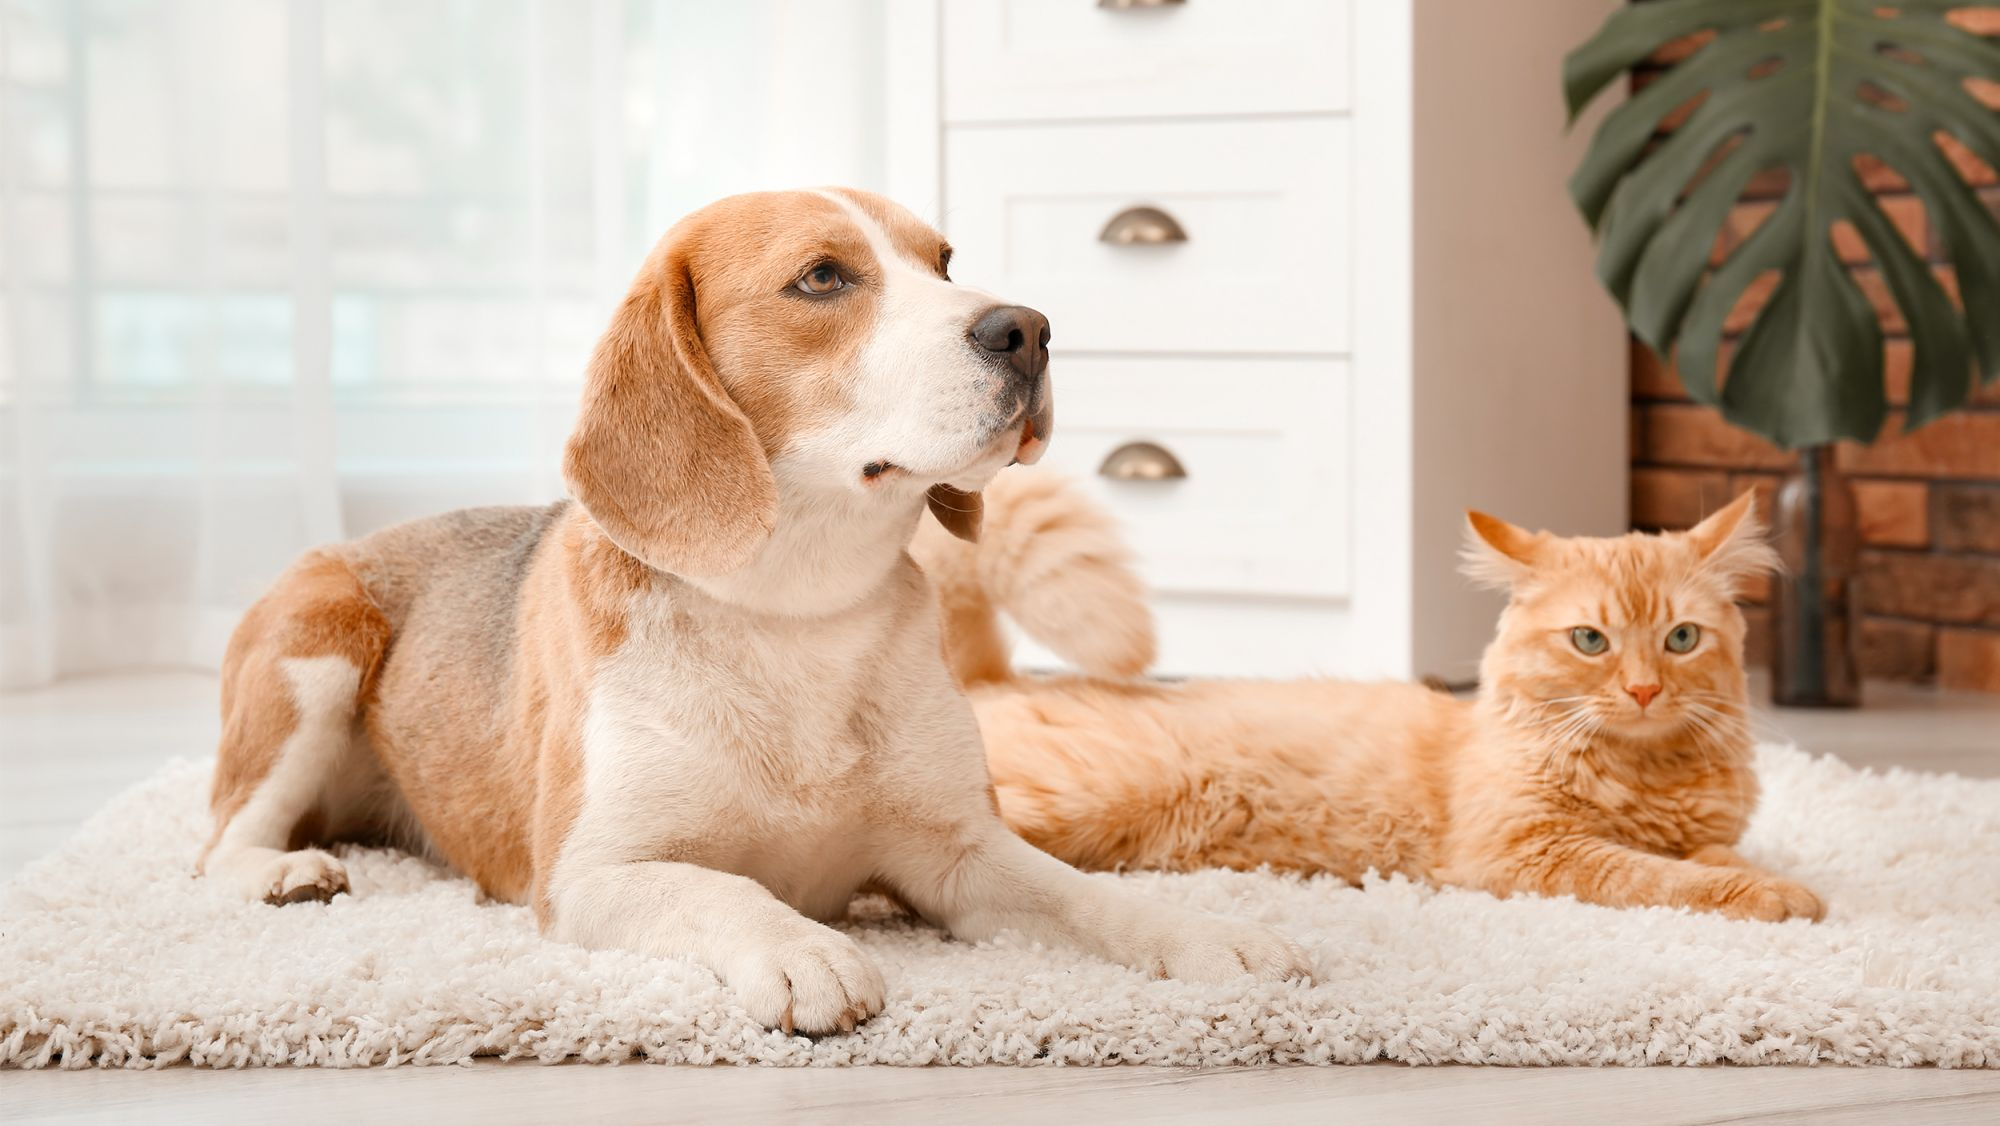 Ein ausgewachsener Beagle und eine rote Katze liegen in einem Innenraum auf einem weißen Teppich.